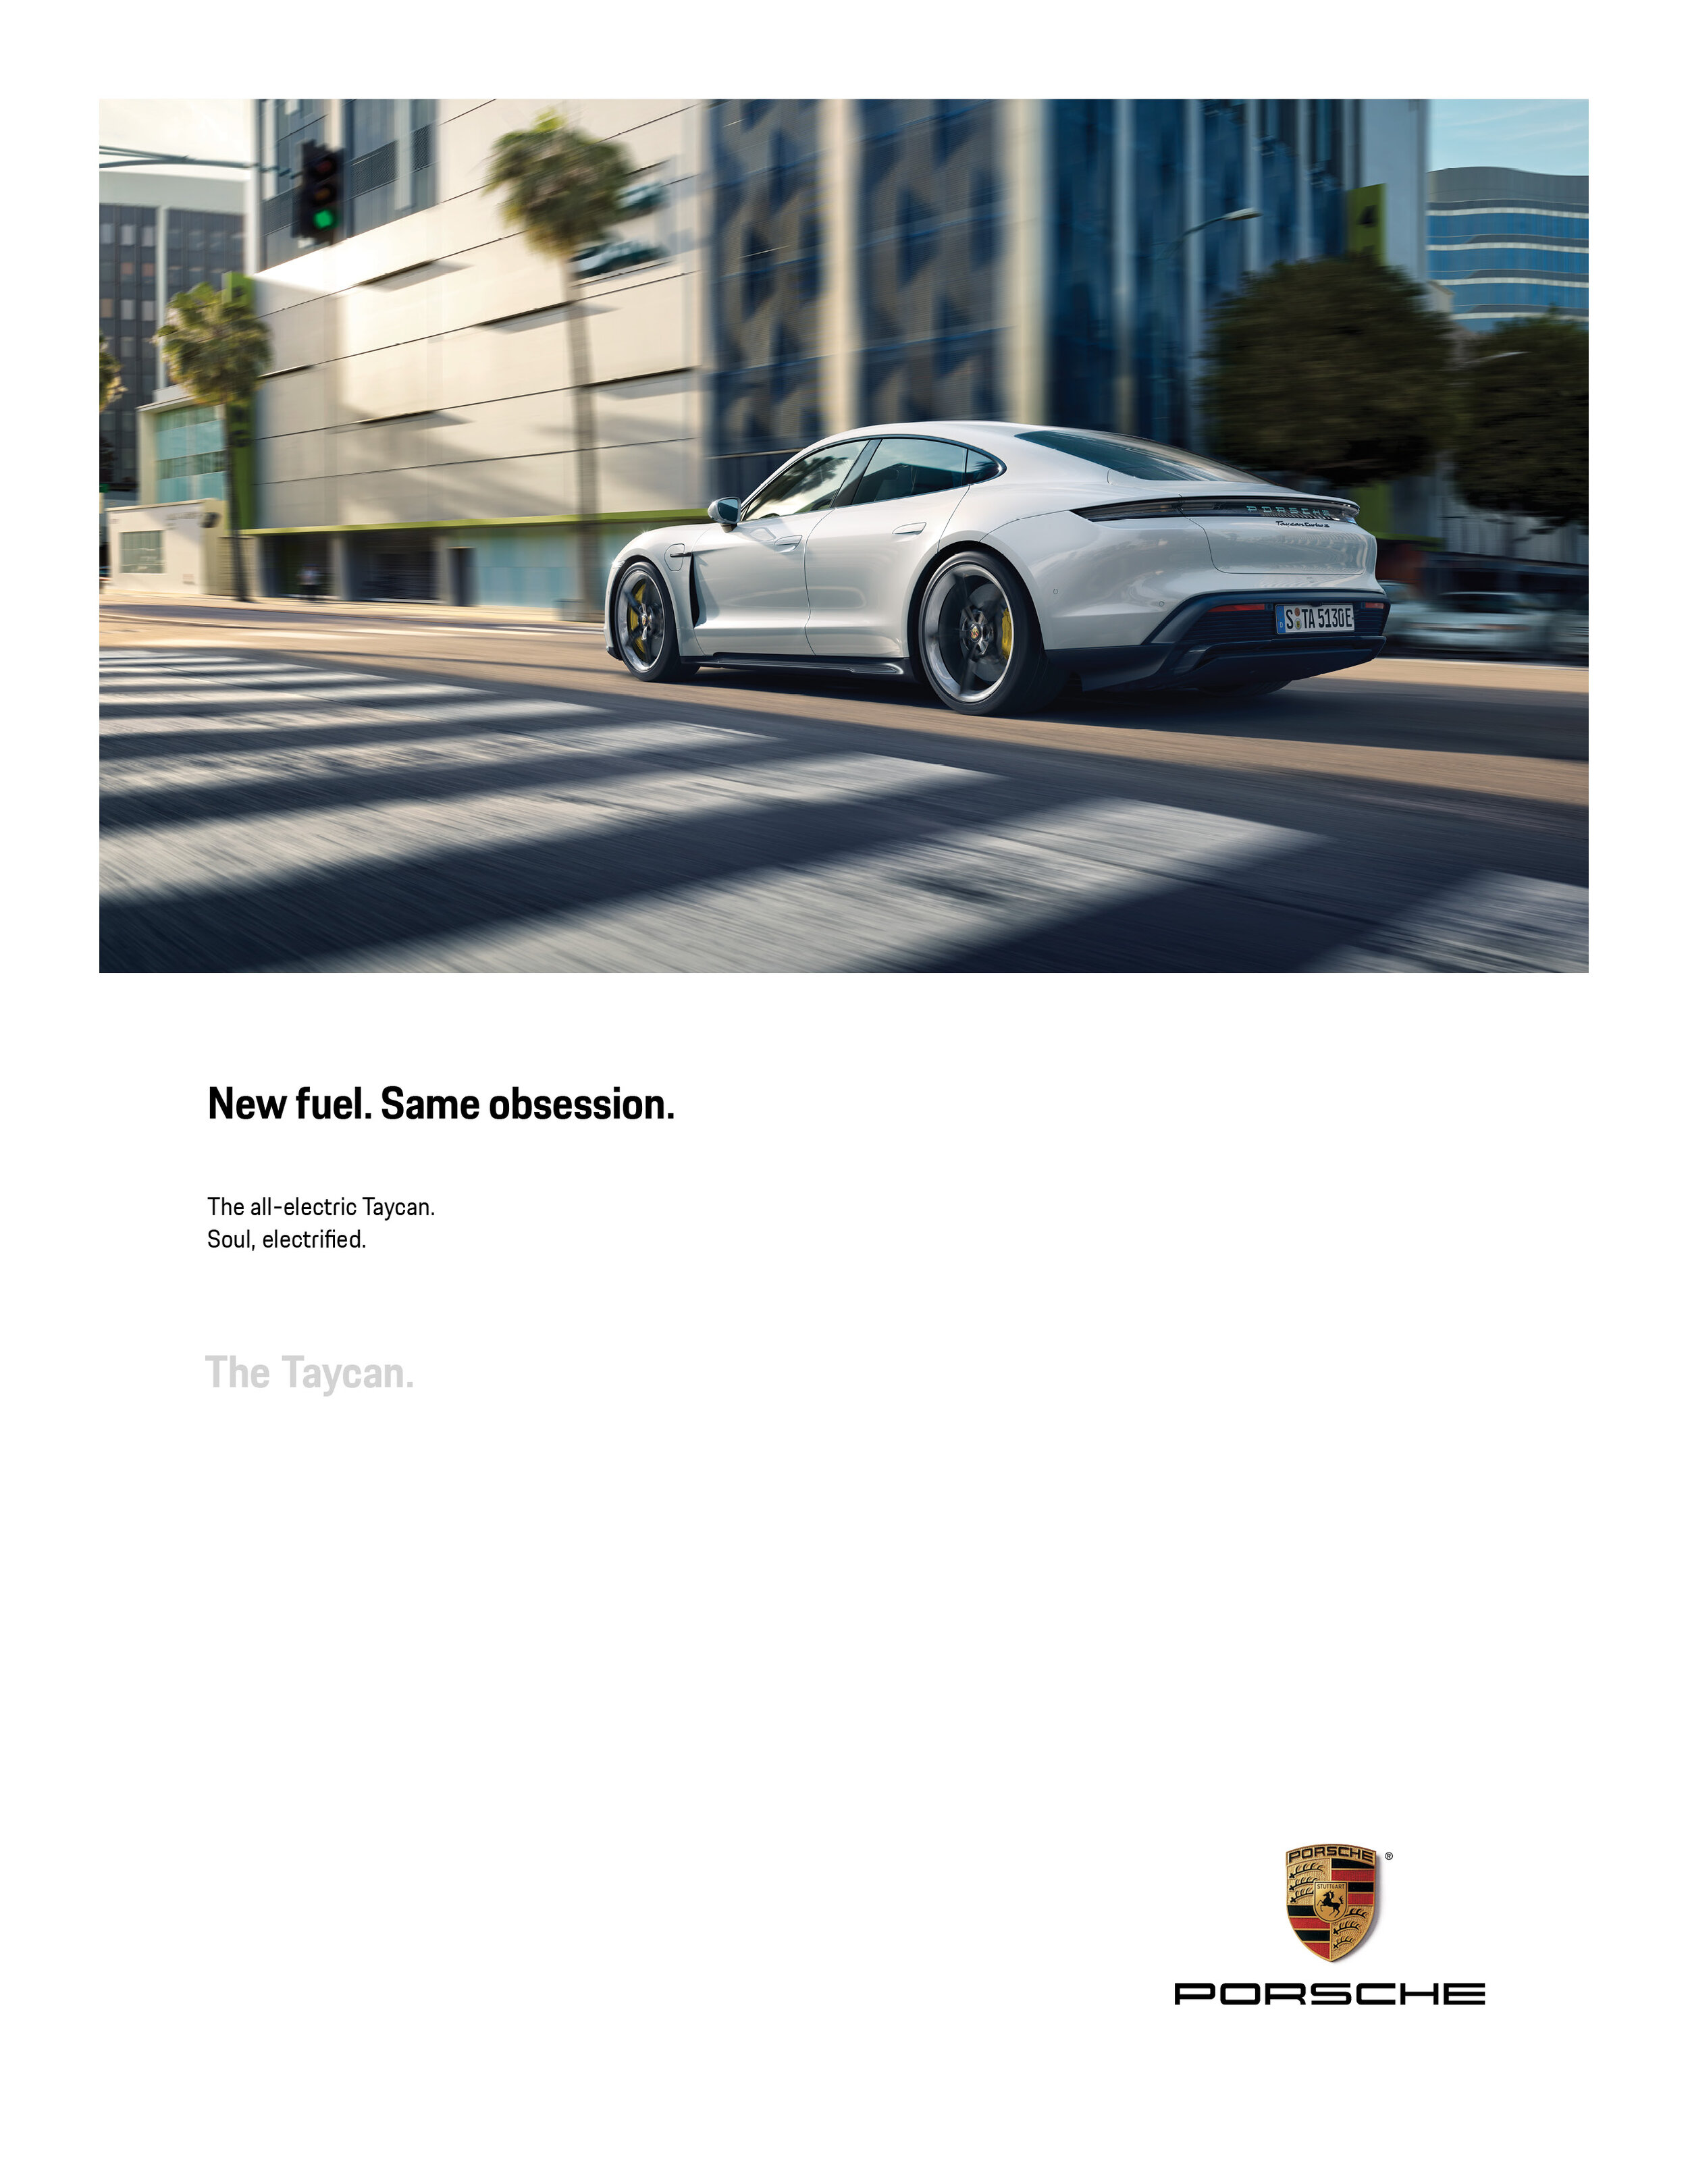 Porsche-Print.jpg